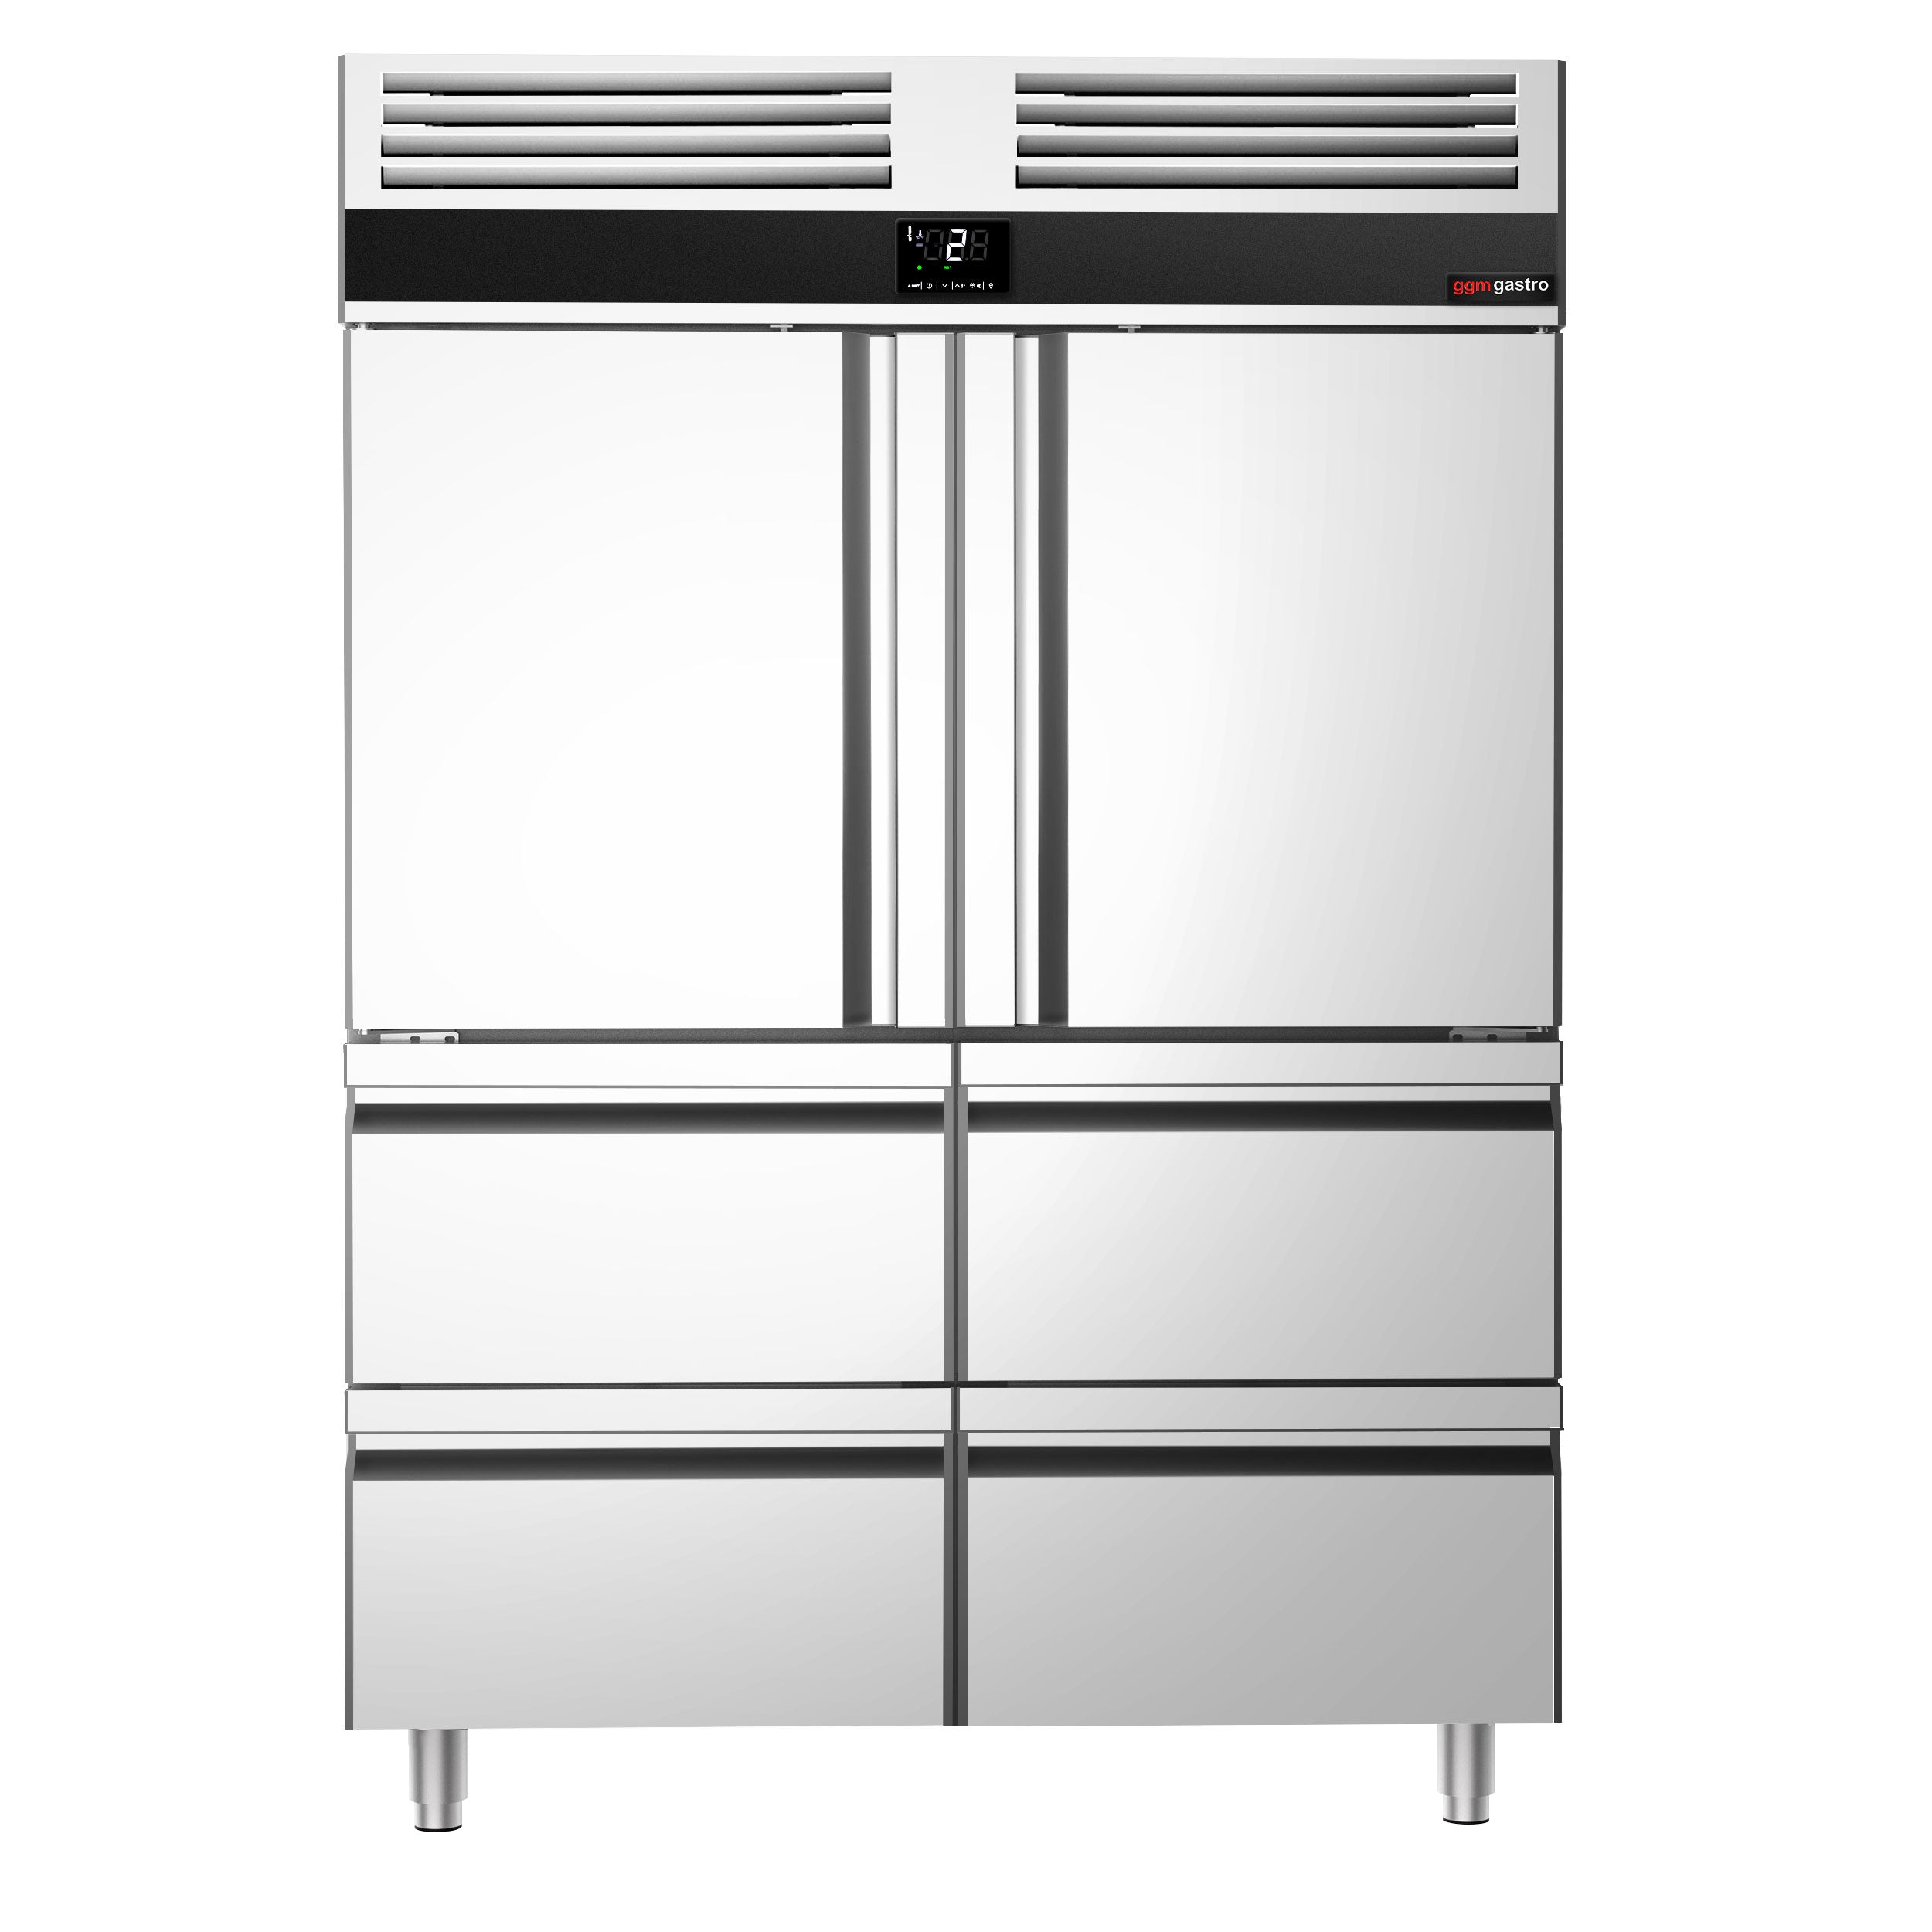 Køleskab - 1,4 x 0,81 m - med 2 halvdøre i rustfrit stål og 4 skuffer 1/2